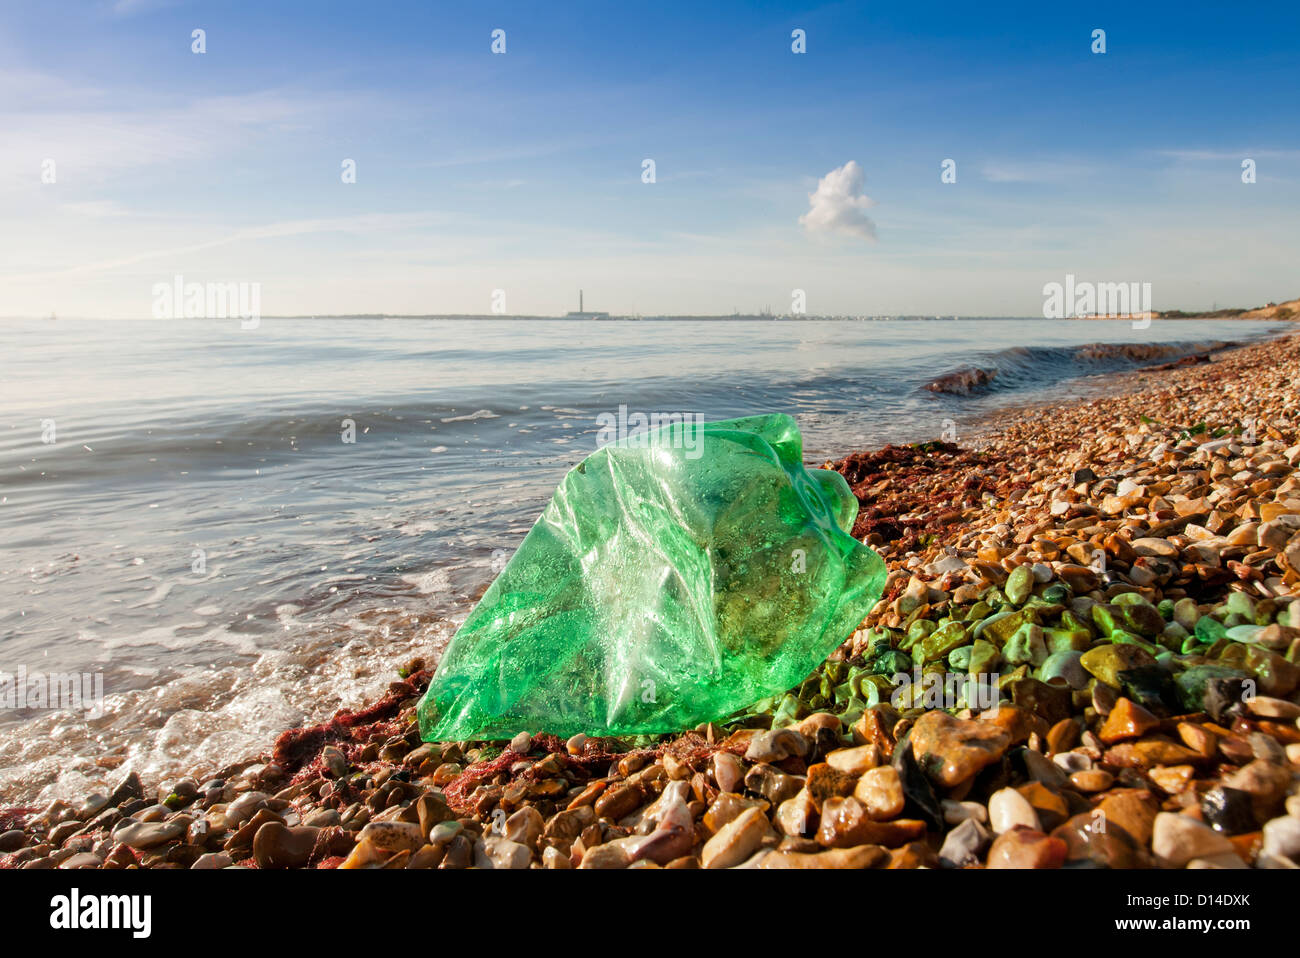 La bottiglia di plastica lavati fino su una spiaggia, inquinamento delle coste Foto Stock